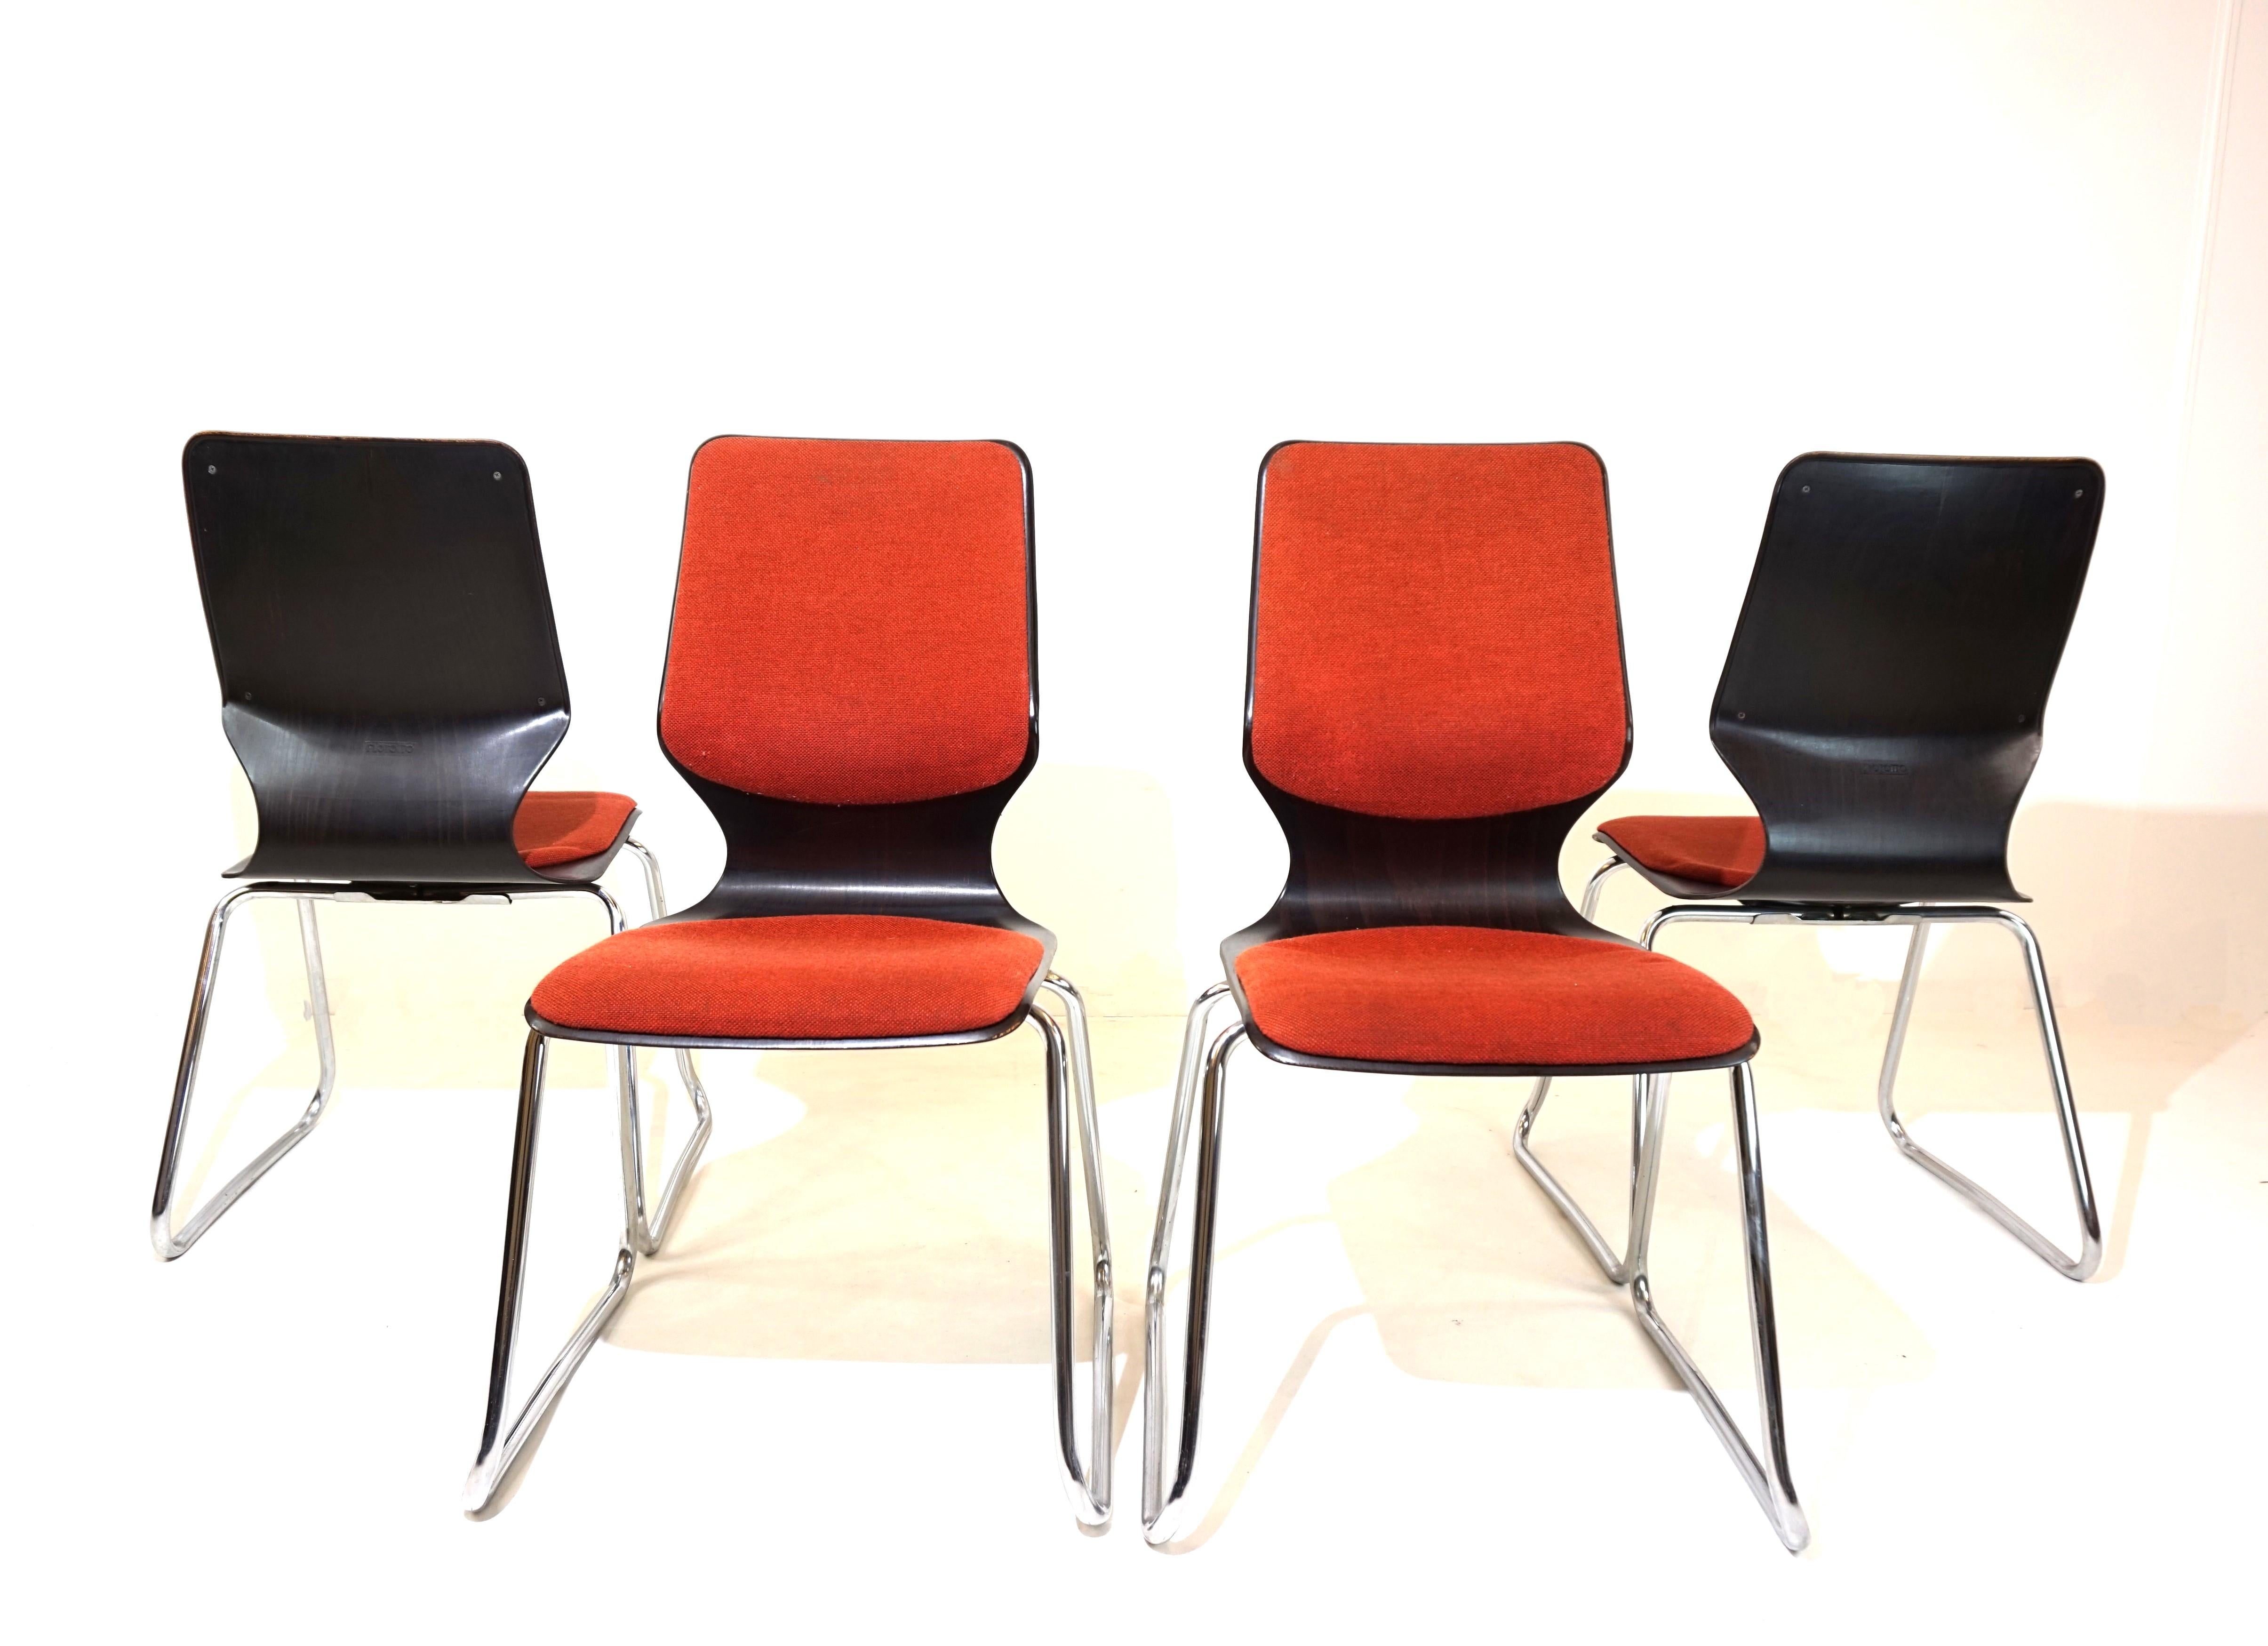 Ein Satz von 4 Flötotto-Stühlen im gewünschten Design mit hoher Rückenlehne und gepolsterter Sitz- und Rückenschale. Diese Stühle ermöglichen sehr bequemes Sitzen in Verbindung mit einer Design-Ikone. Die Pagholz-Schalen sind in perfektem Zustand.